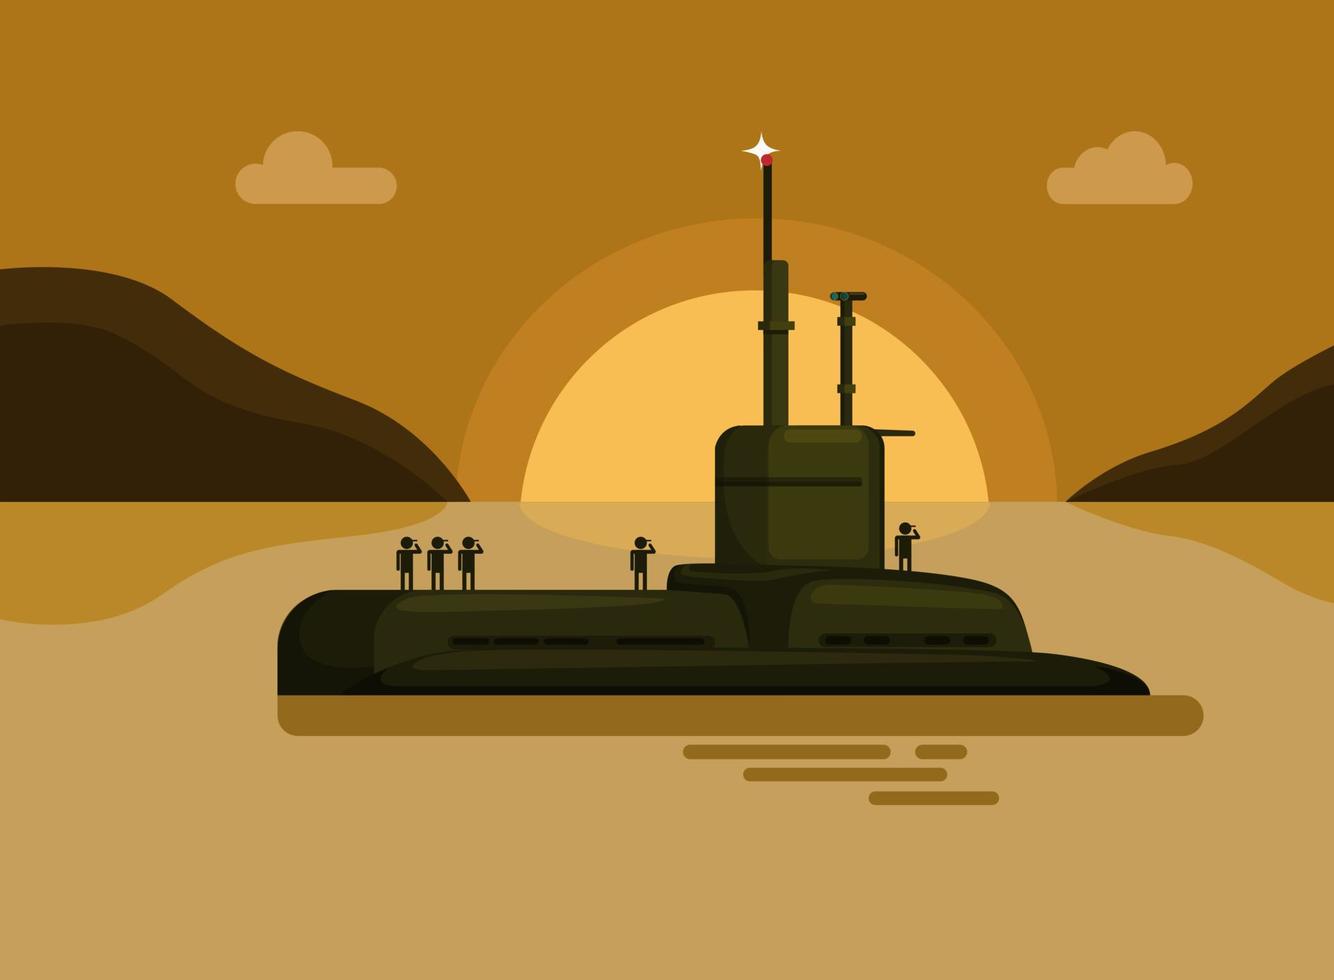 sous-marin avec le coucher du soleil de l'île de la mer soldat de la marine. vecteur d'illustration de dessin animé de navire de guerre militaire